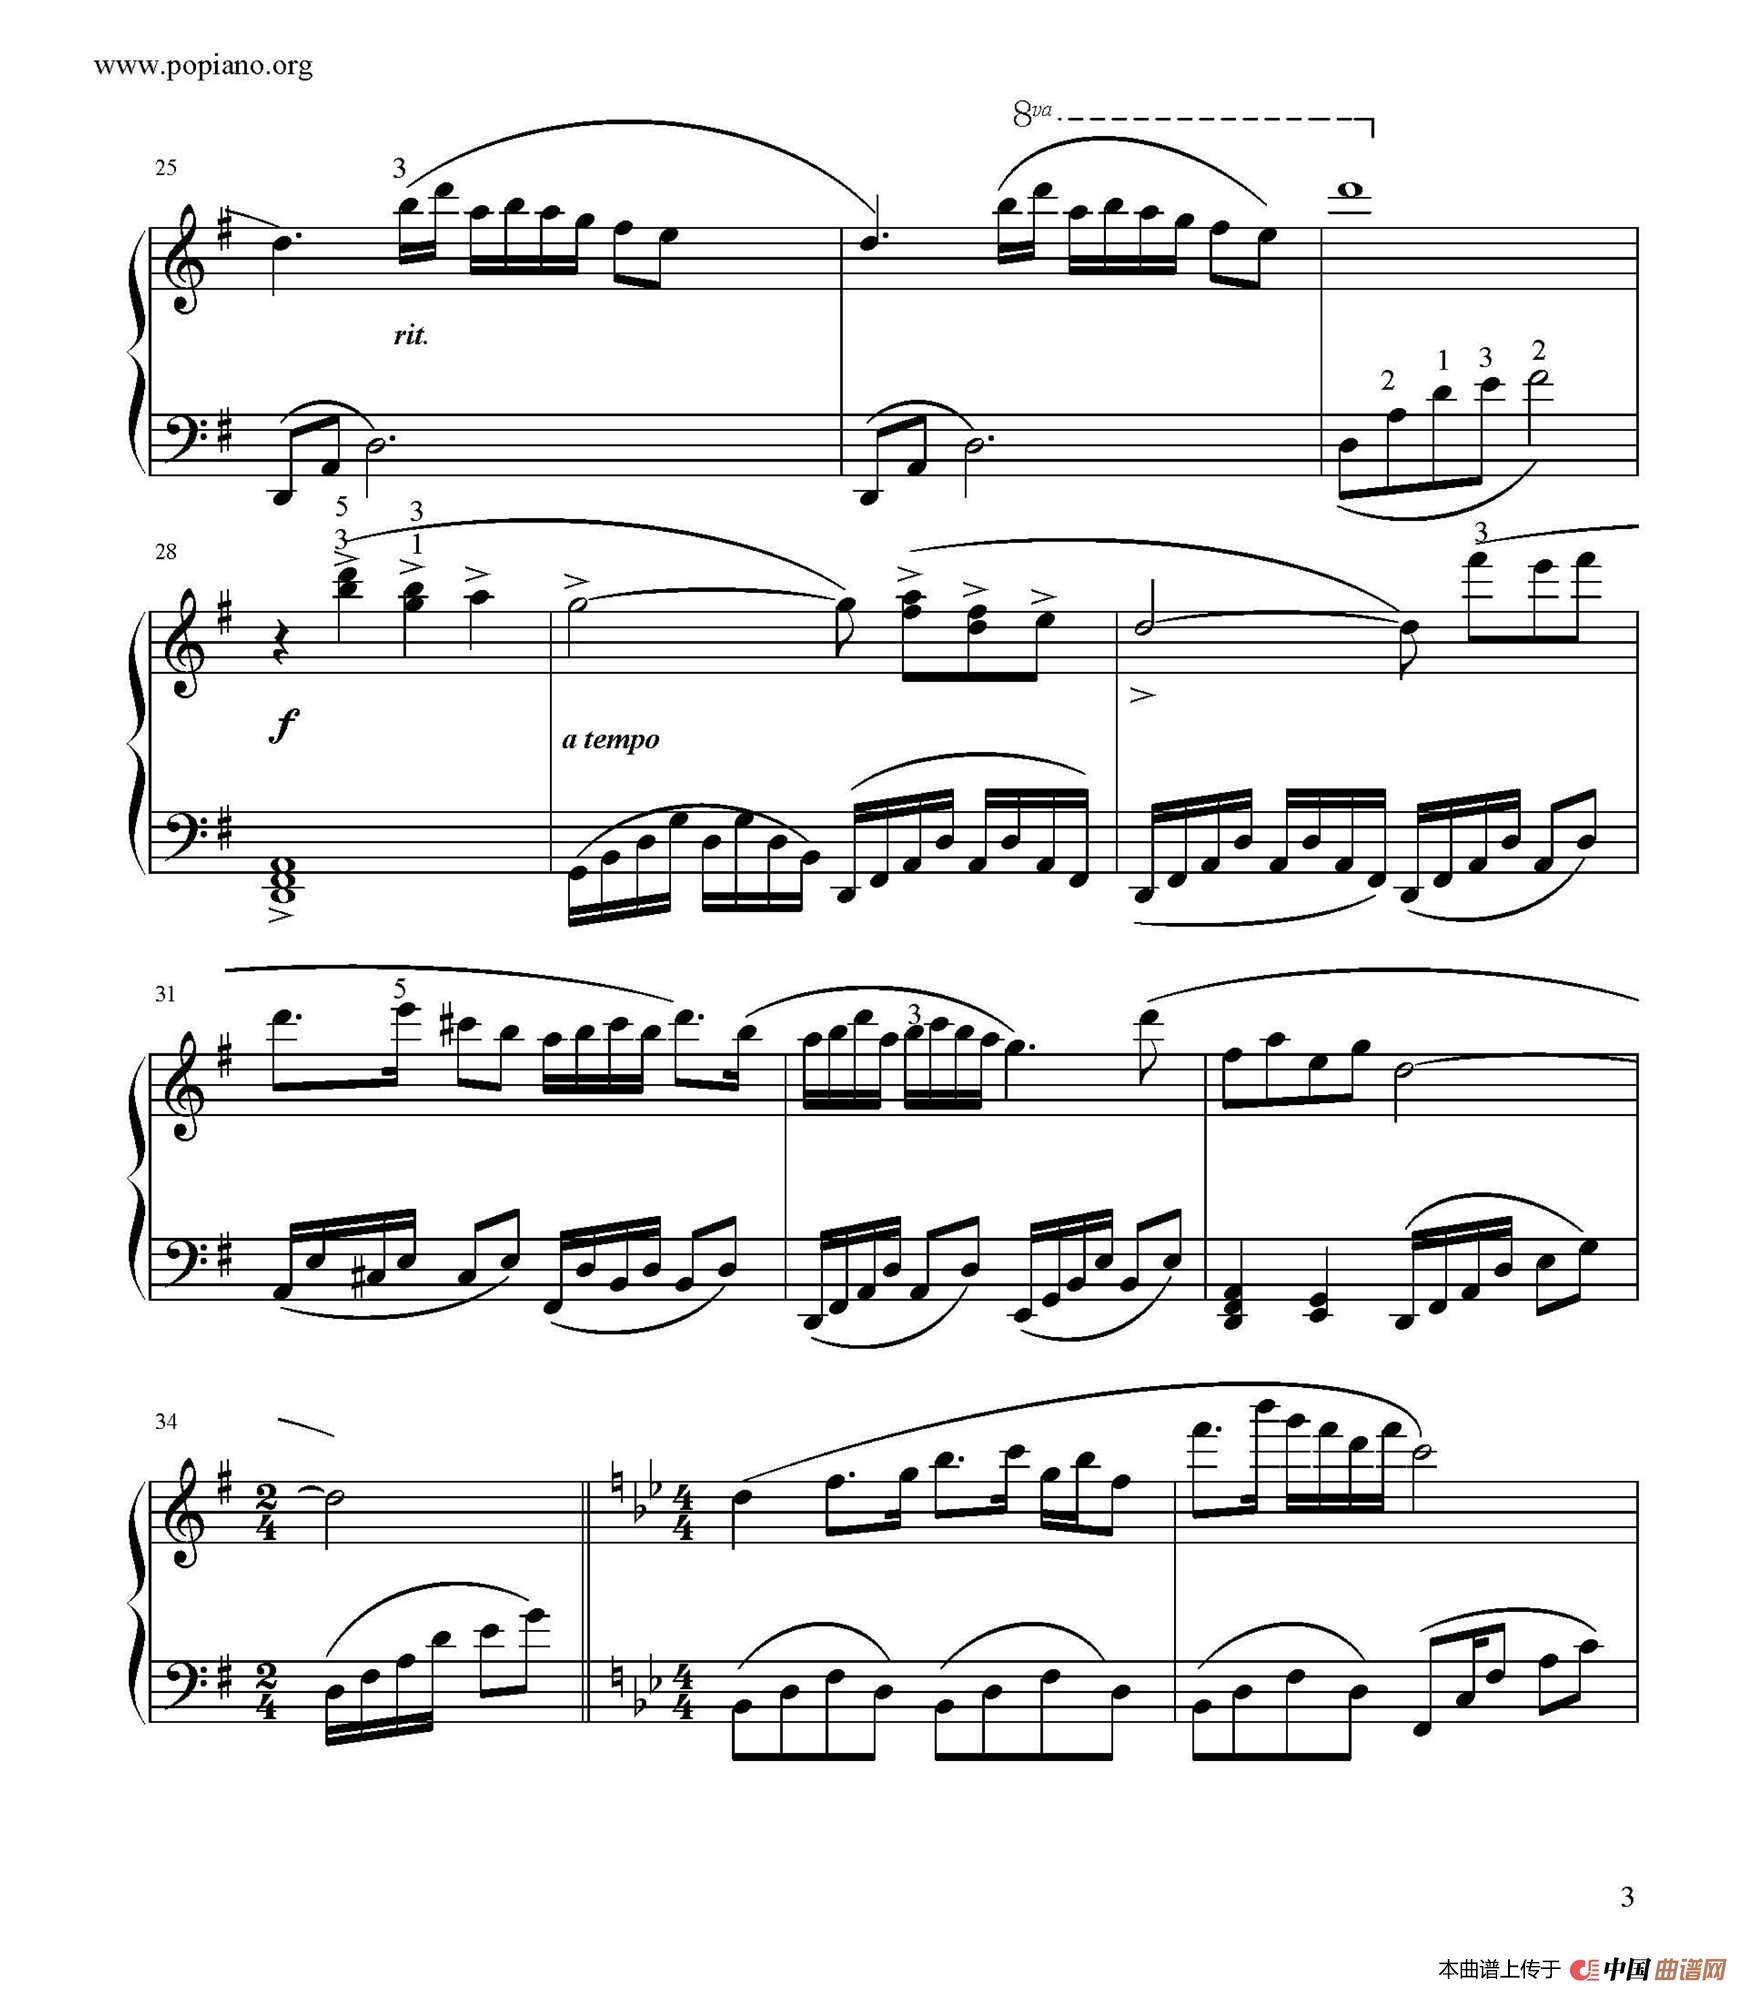 《梁山伯与祝英台》钢琴曲谱图分享